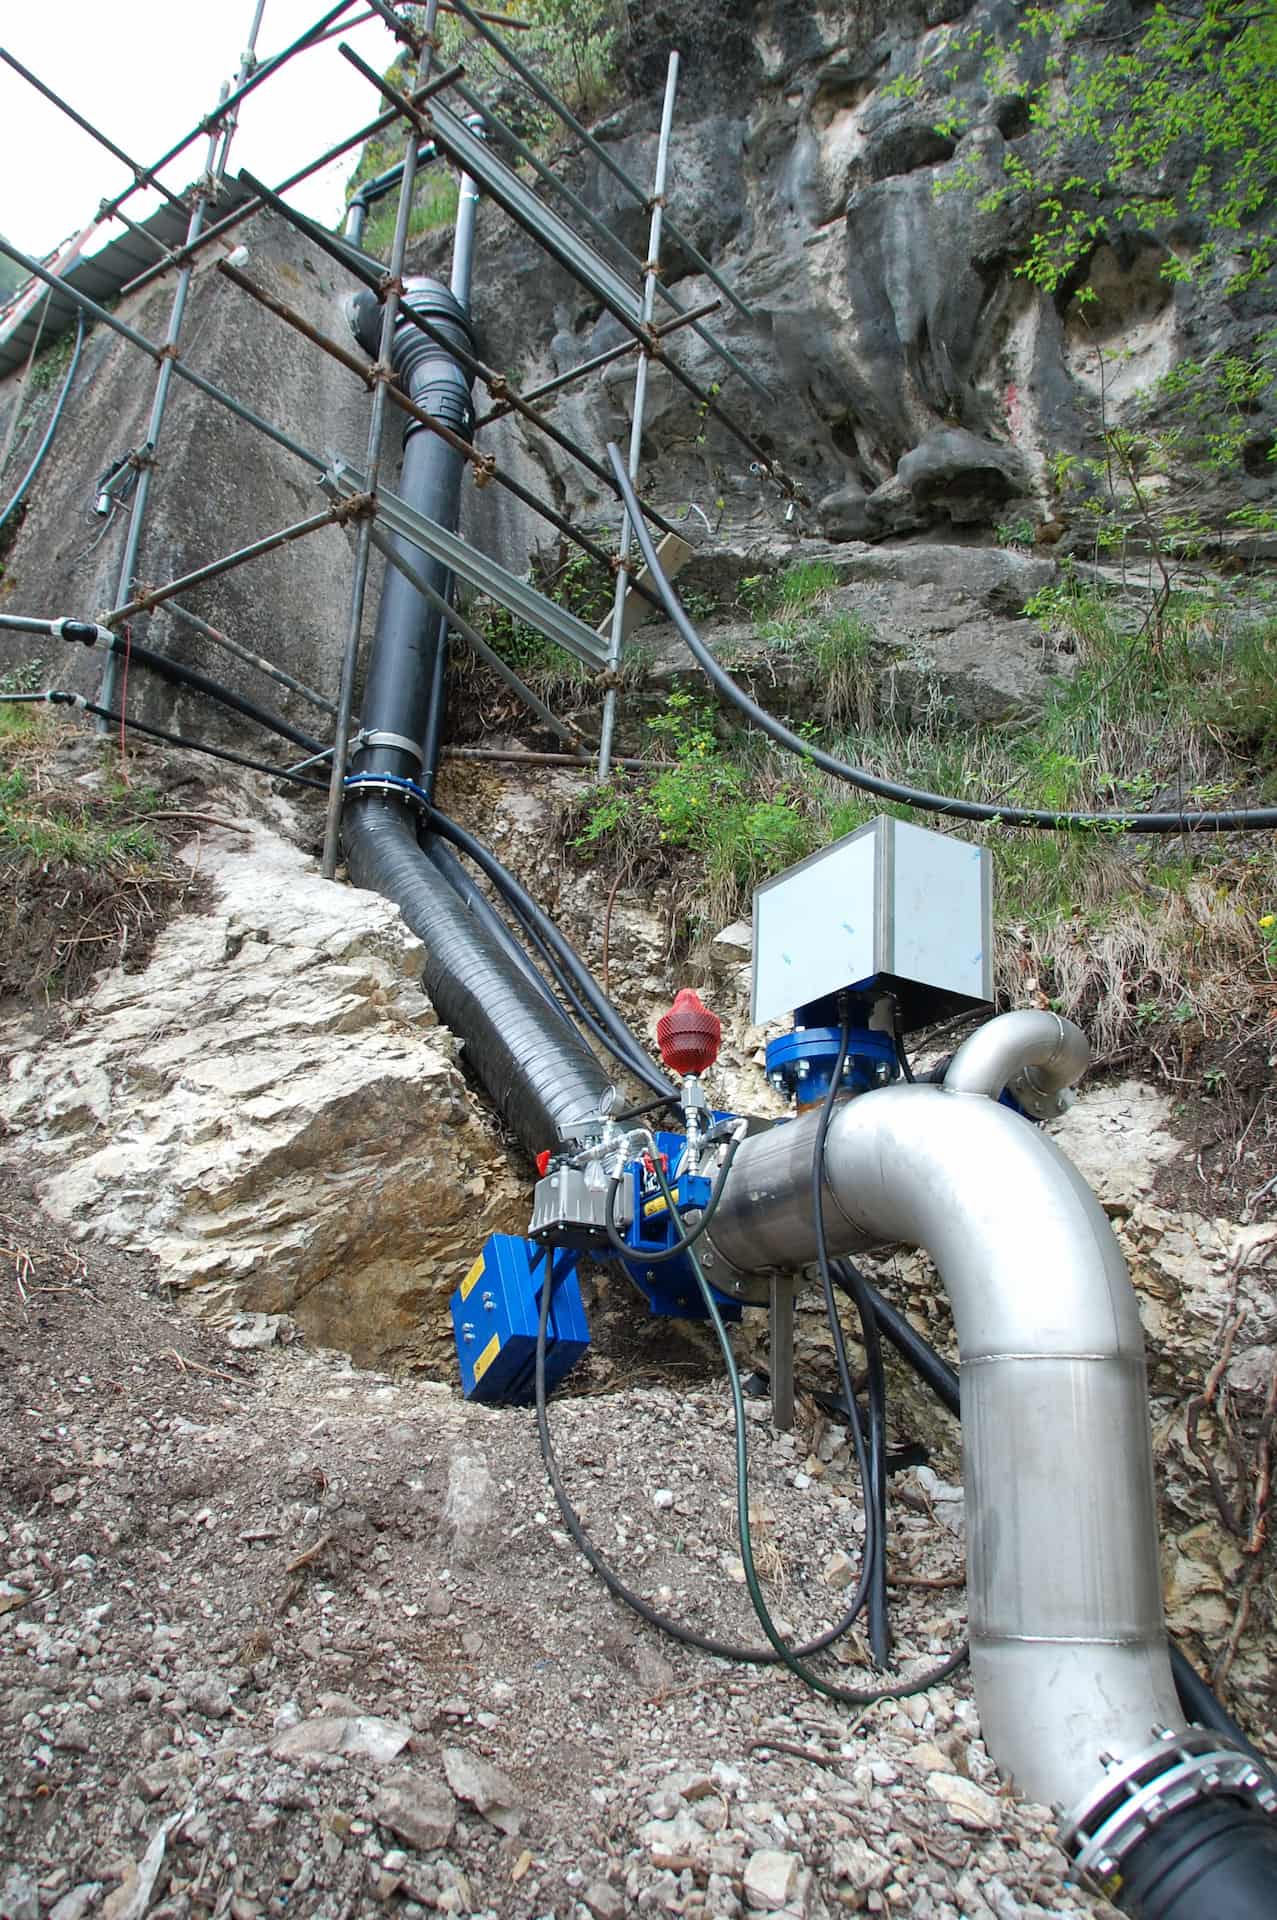 Installazione valvola di sicurezza a palmola presso la presa Roncaglie, Riva del Garda